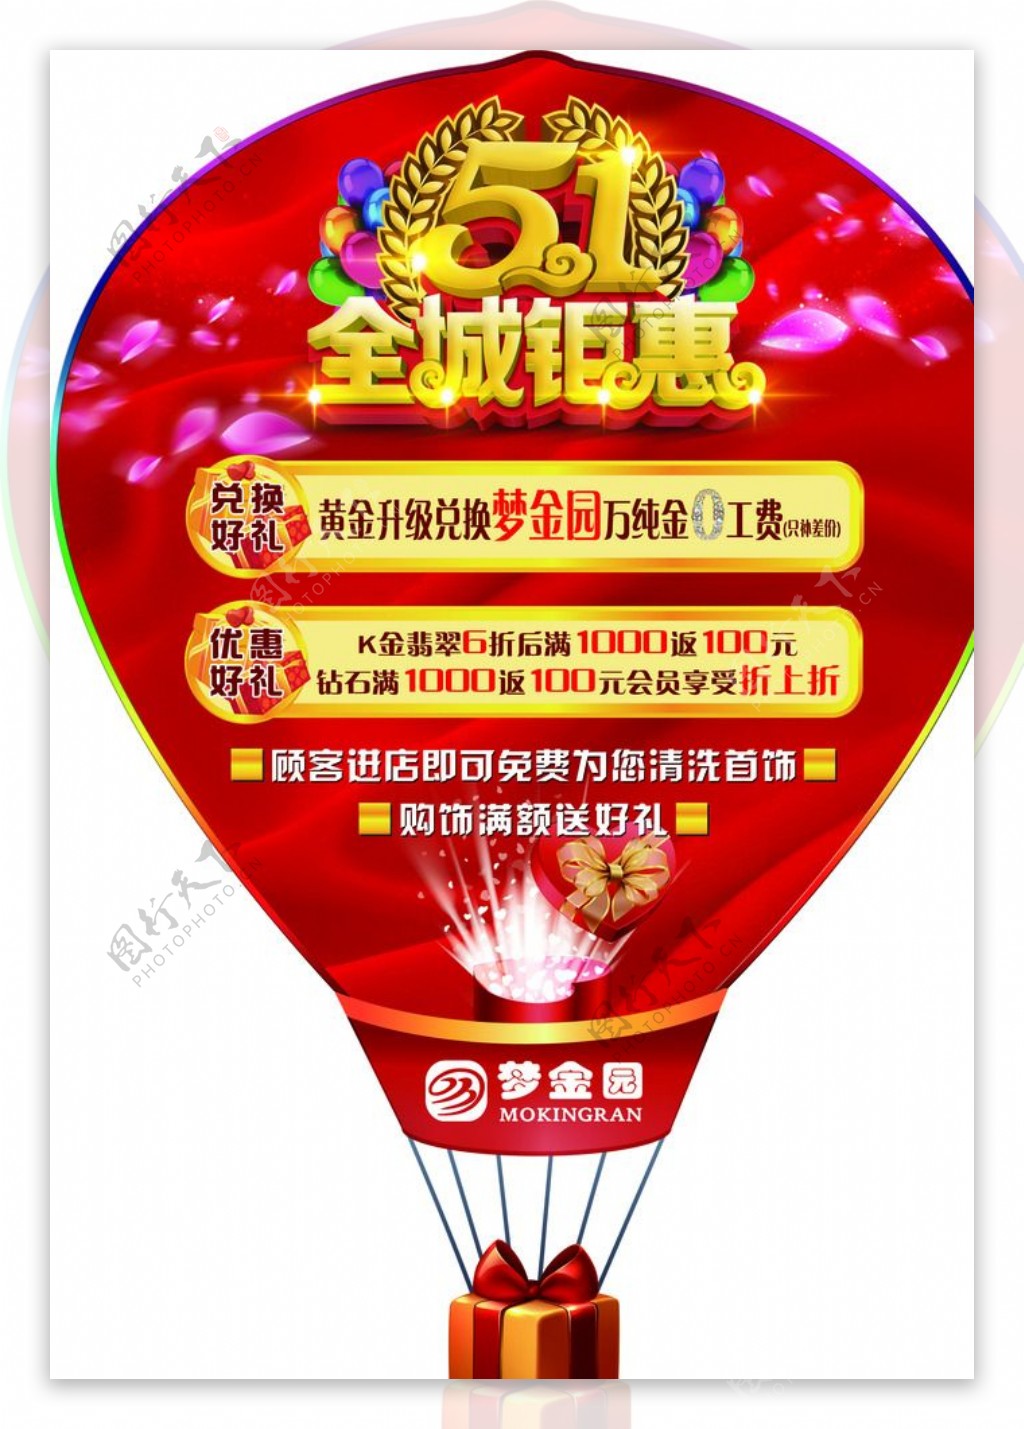 51全城钜惠热气球型广告